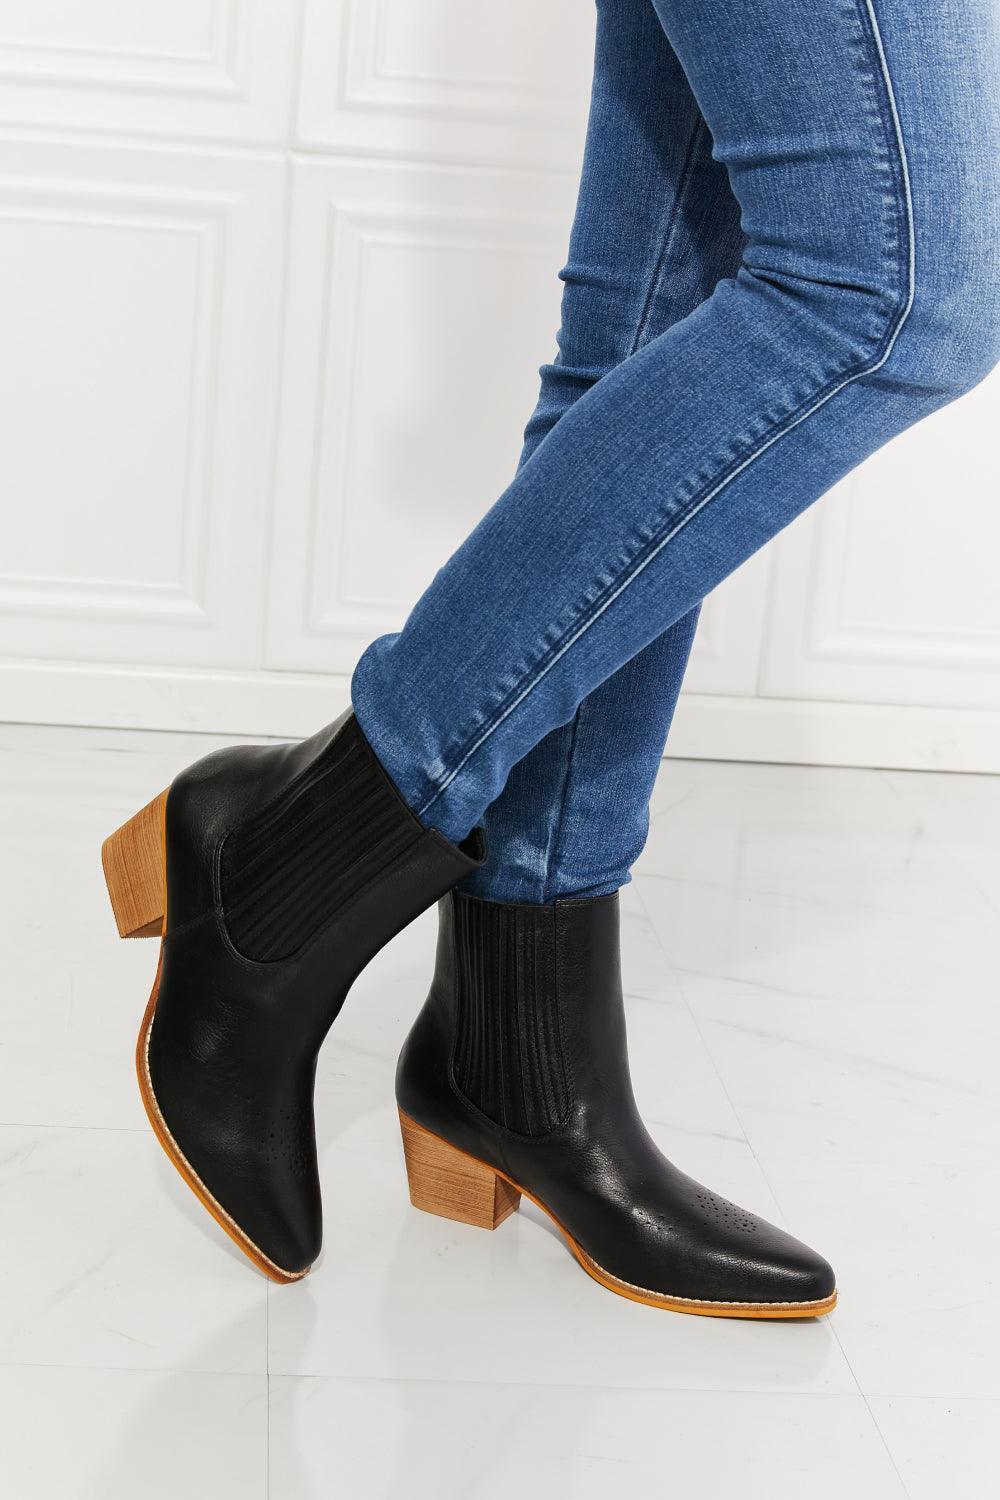 MMShoes PU Leather Heel Womens Black Chelsea Boots - MXSTUDIO.COM